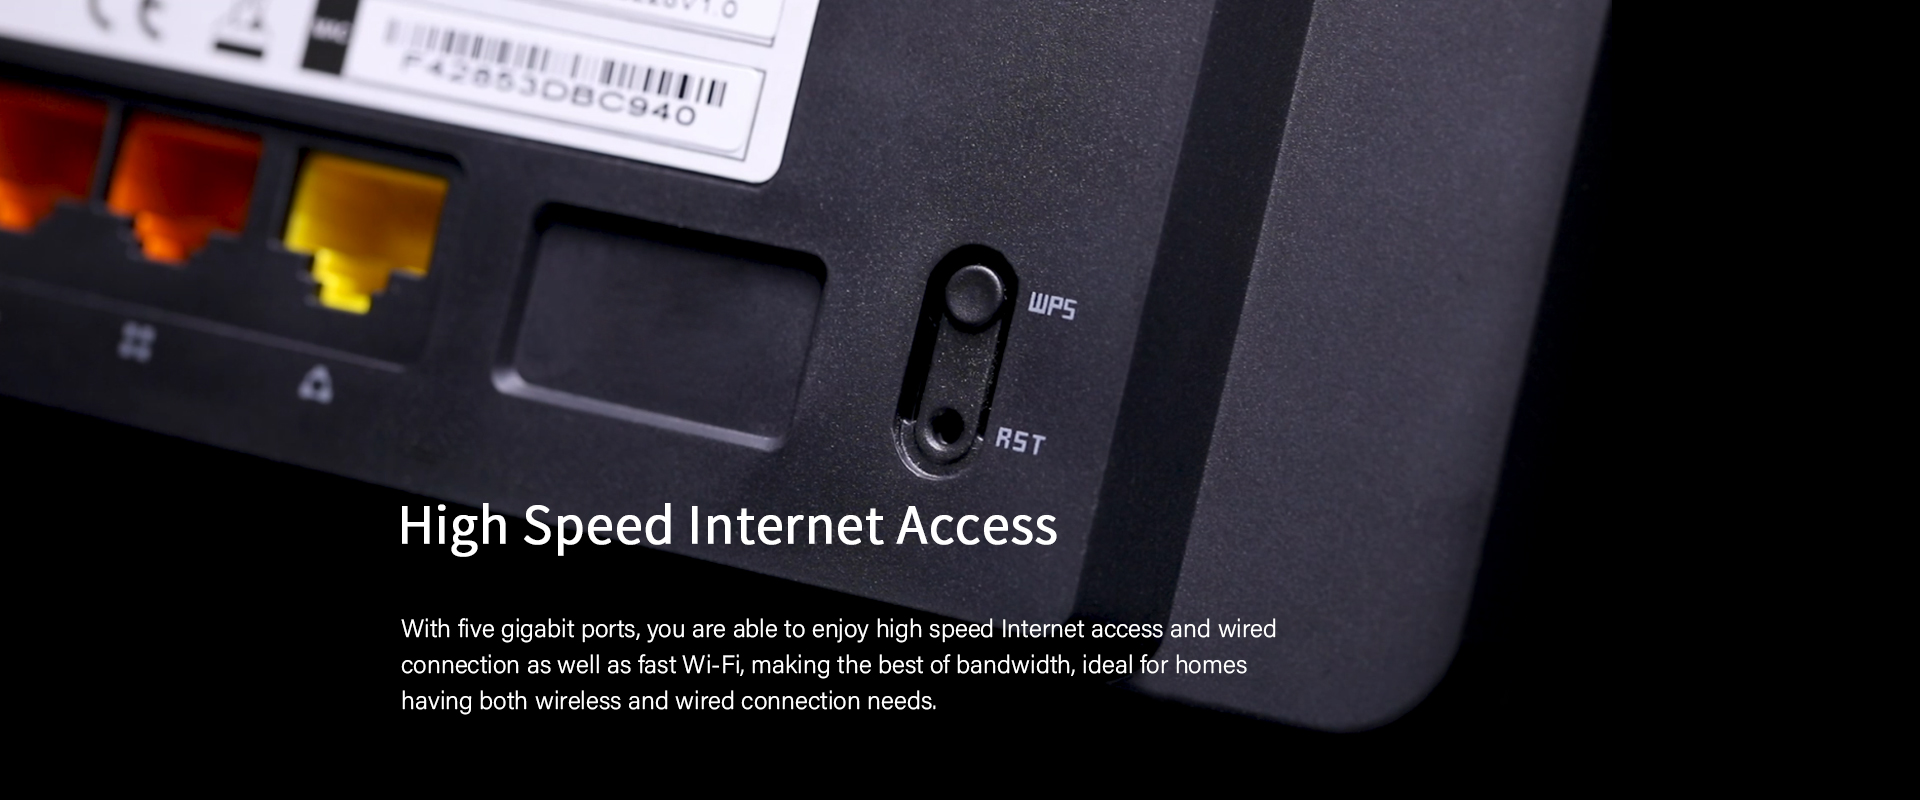 high speed internet access